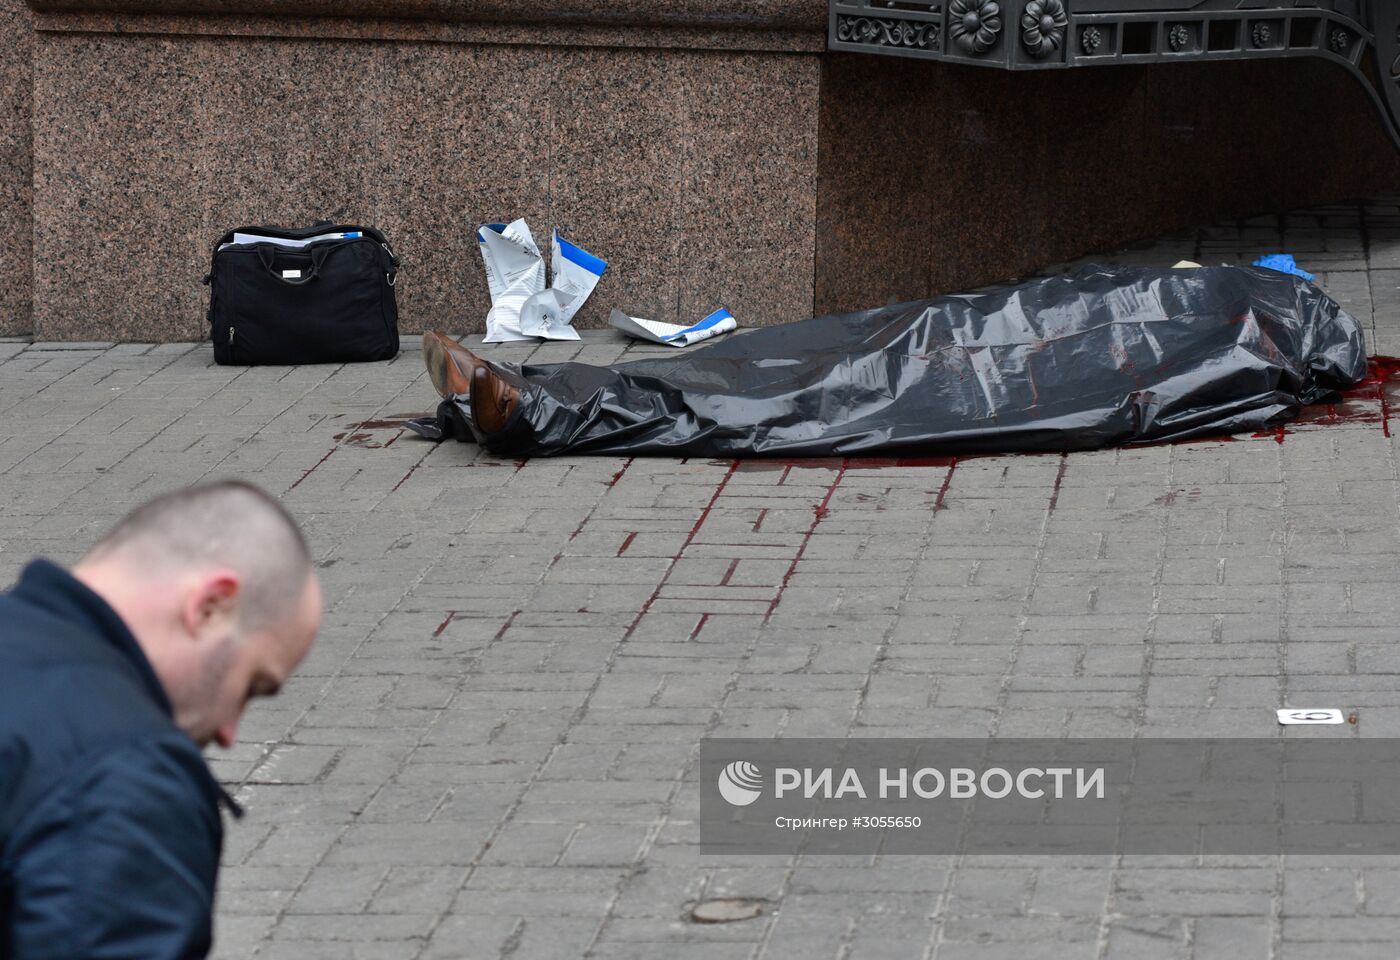 Экс-депутат Госдумы Вороненков убит в Киеве